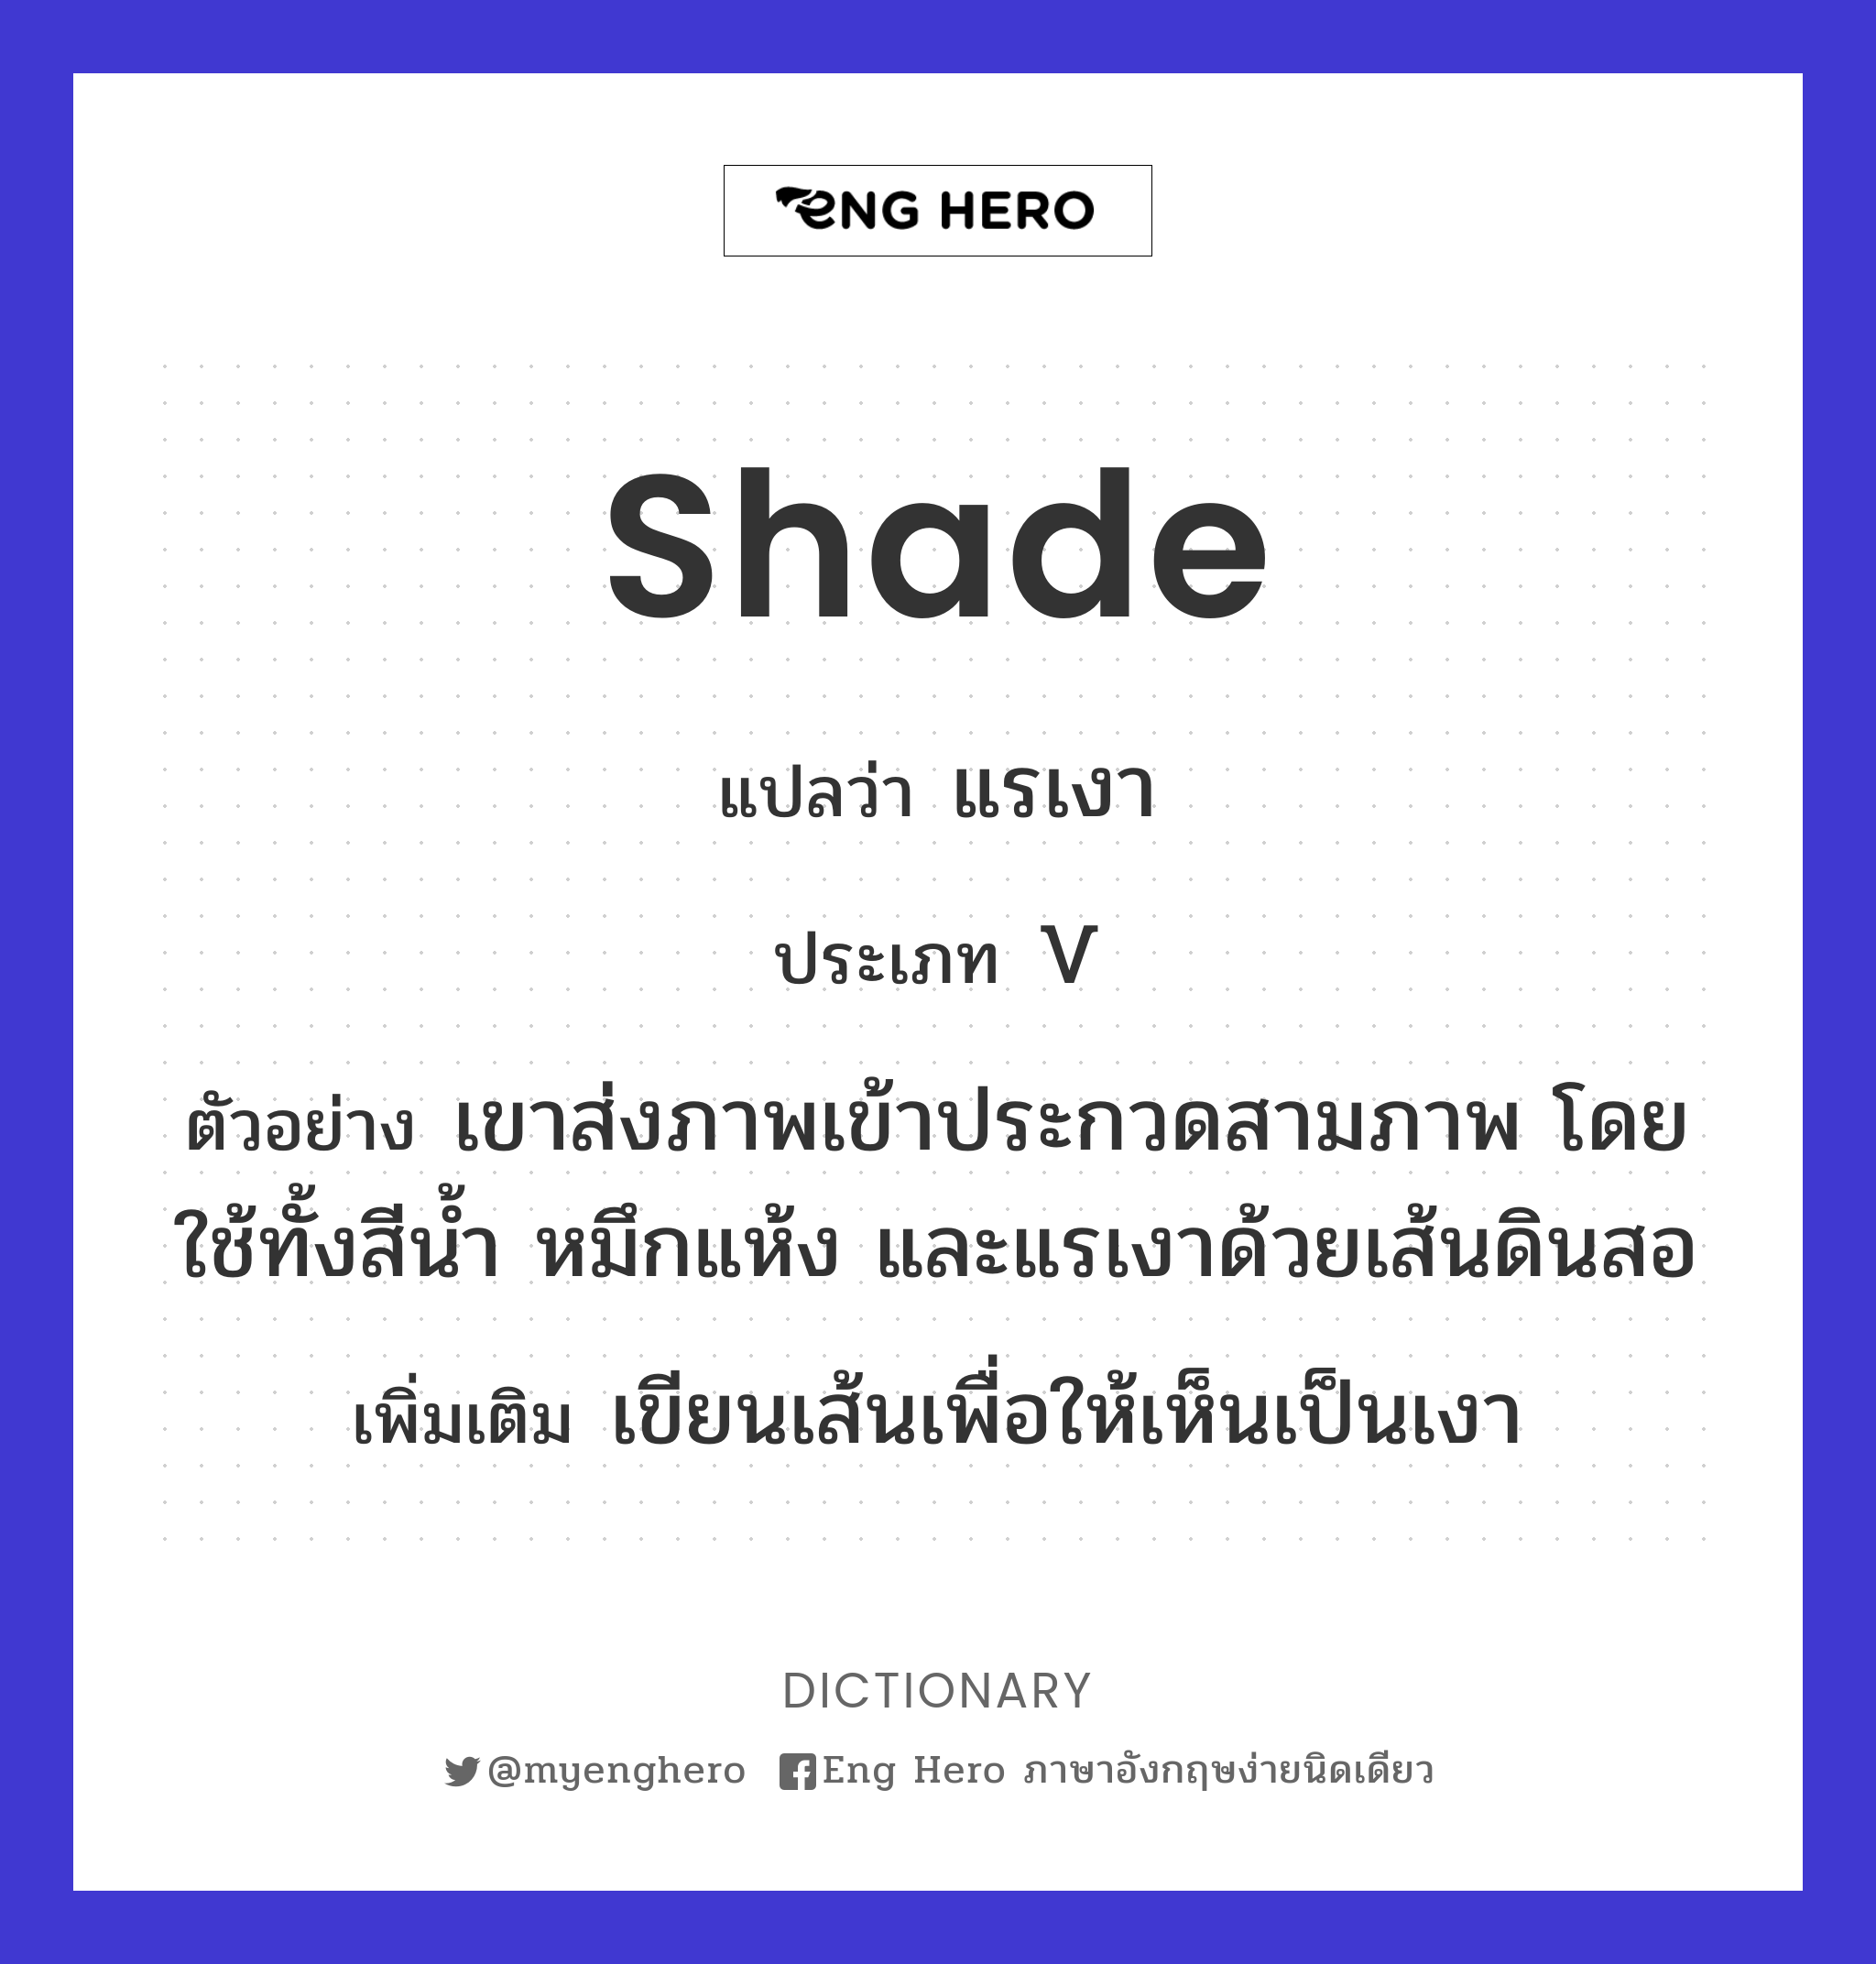 shade